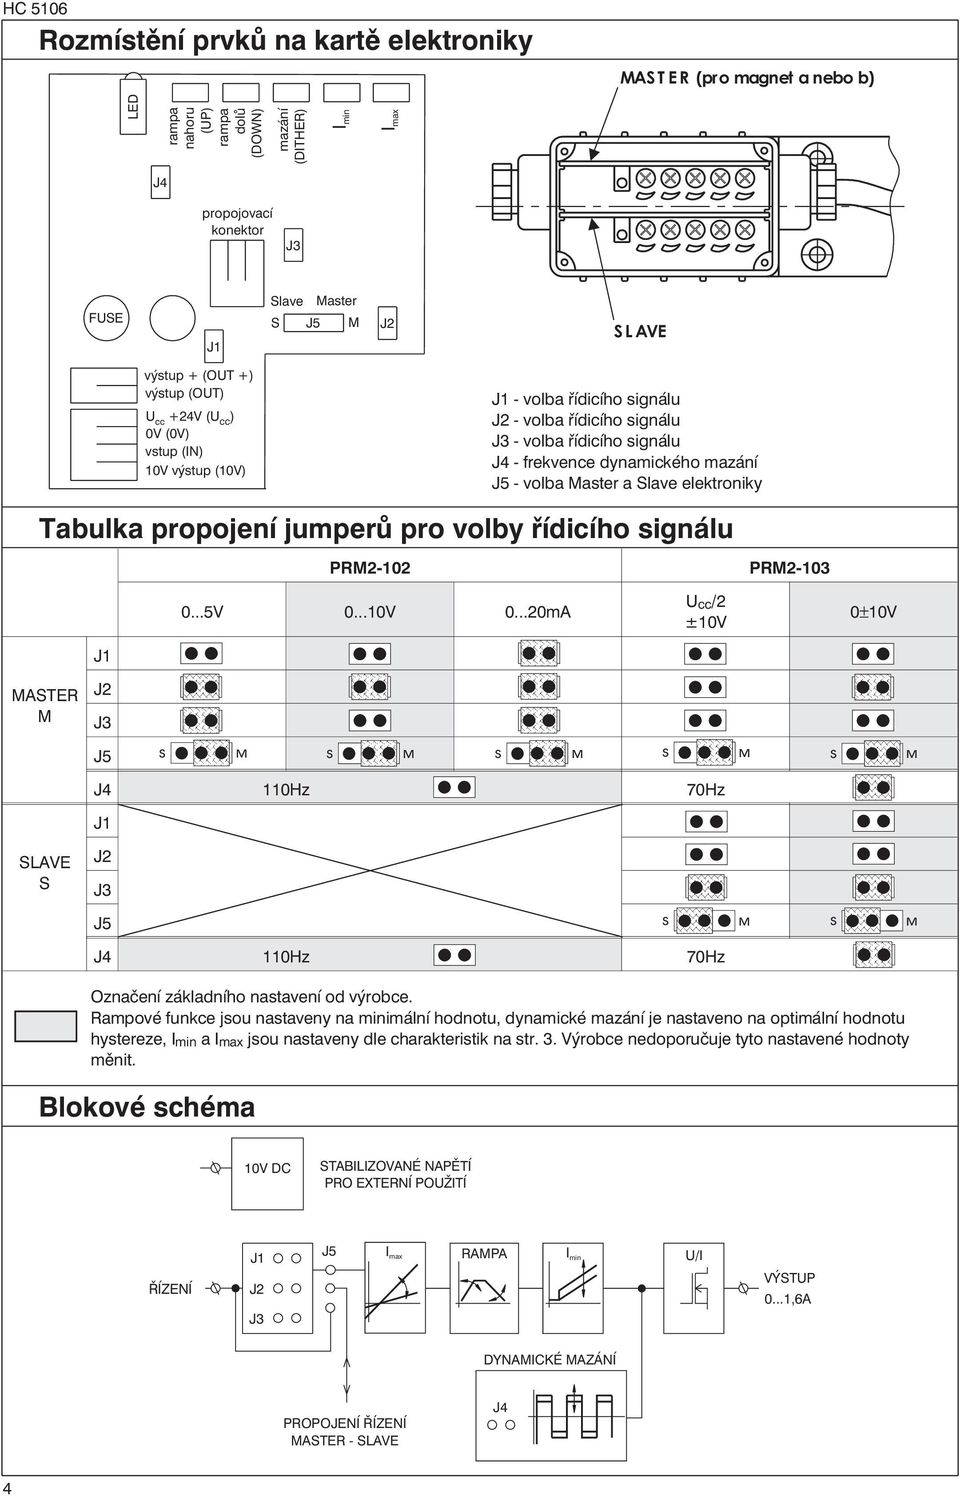 J5 - volba Master a Slave elektroniky Tabulka propojení jumperů pro volby řídicího signálu PRM-0 PRM-03 0...5V 0...0V 0.